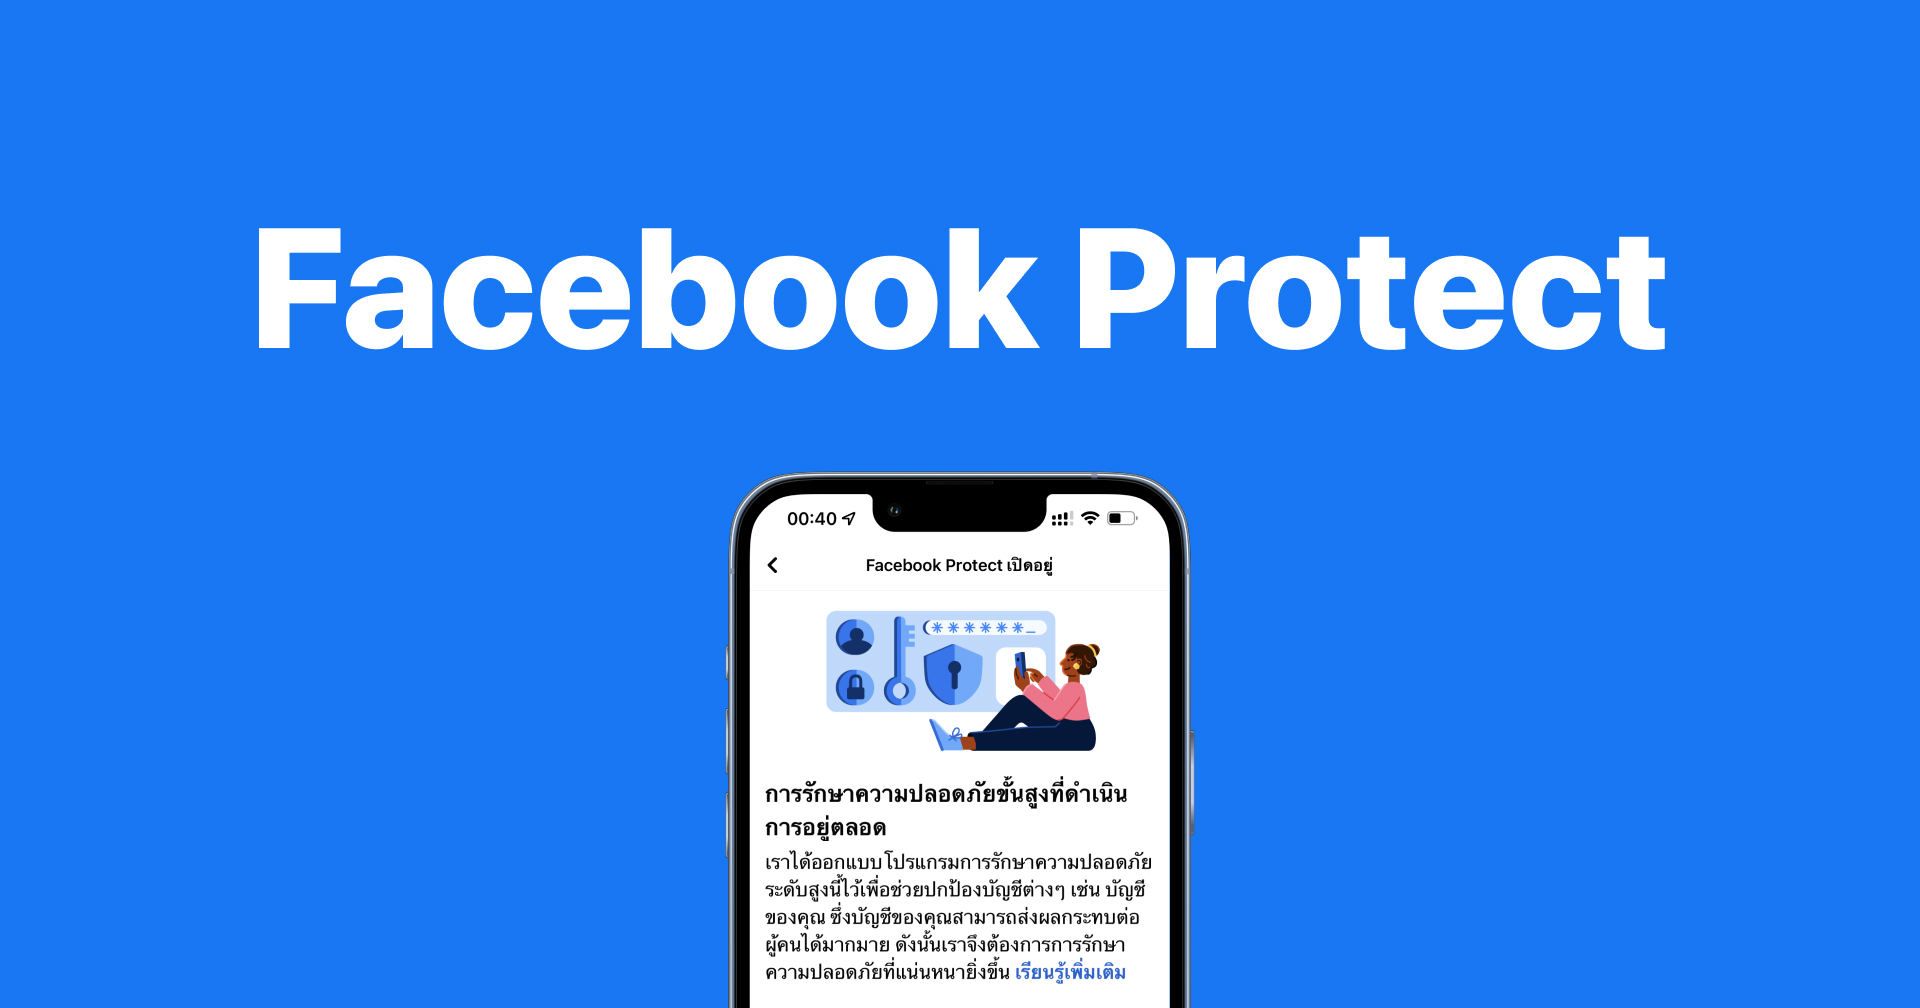 ไขข้อสงสัย!! Facebook Protect คืออะไร?? ต้องเปิดใช้งาน ไม่นั้นจะใช้งานเฟซบุ๊กไม่ได้